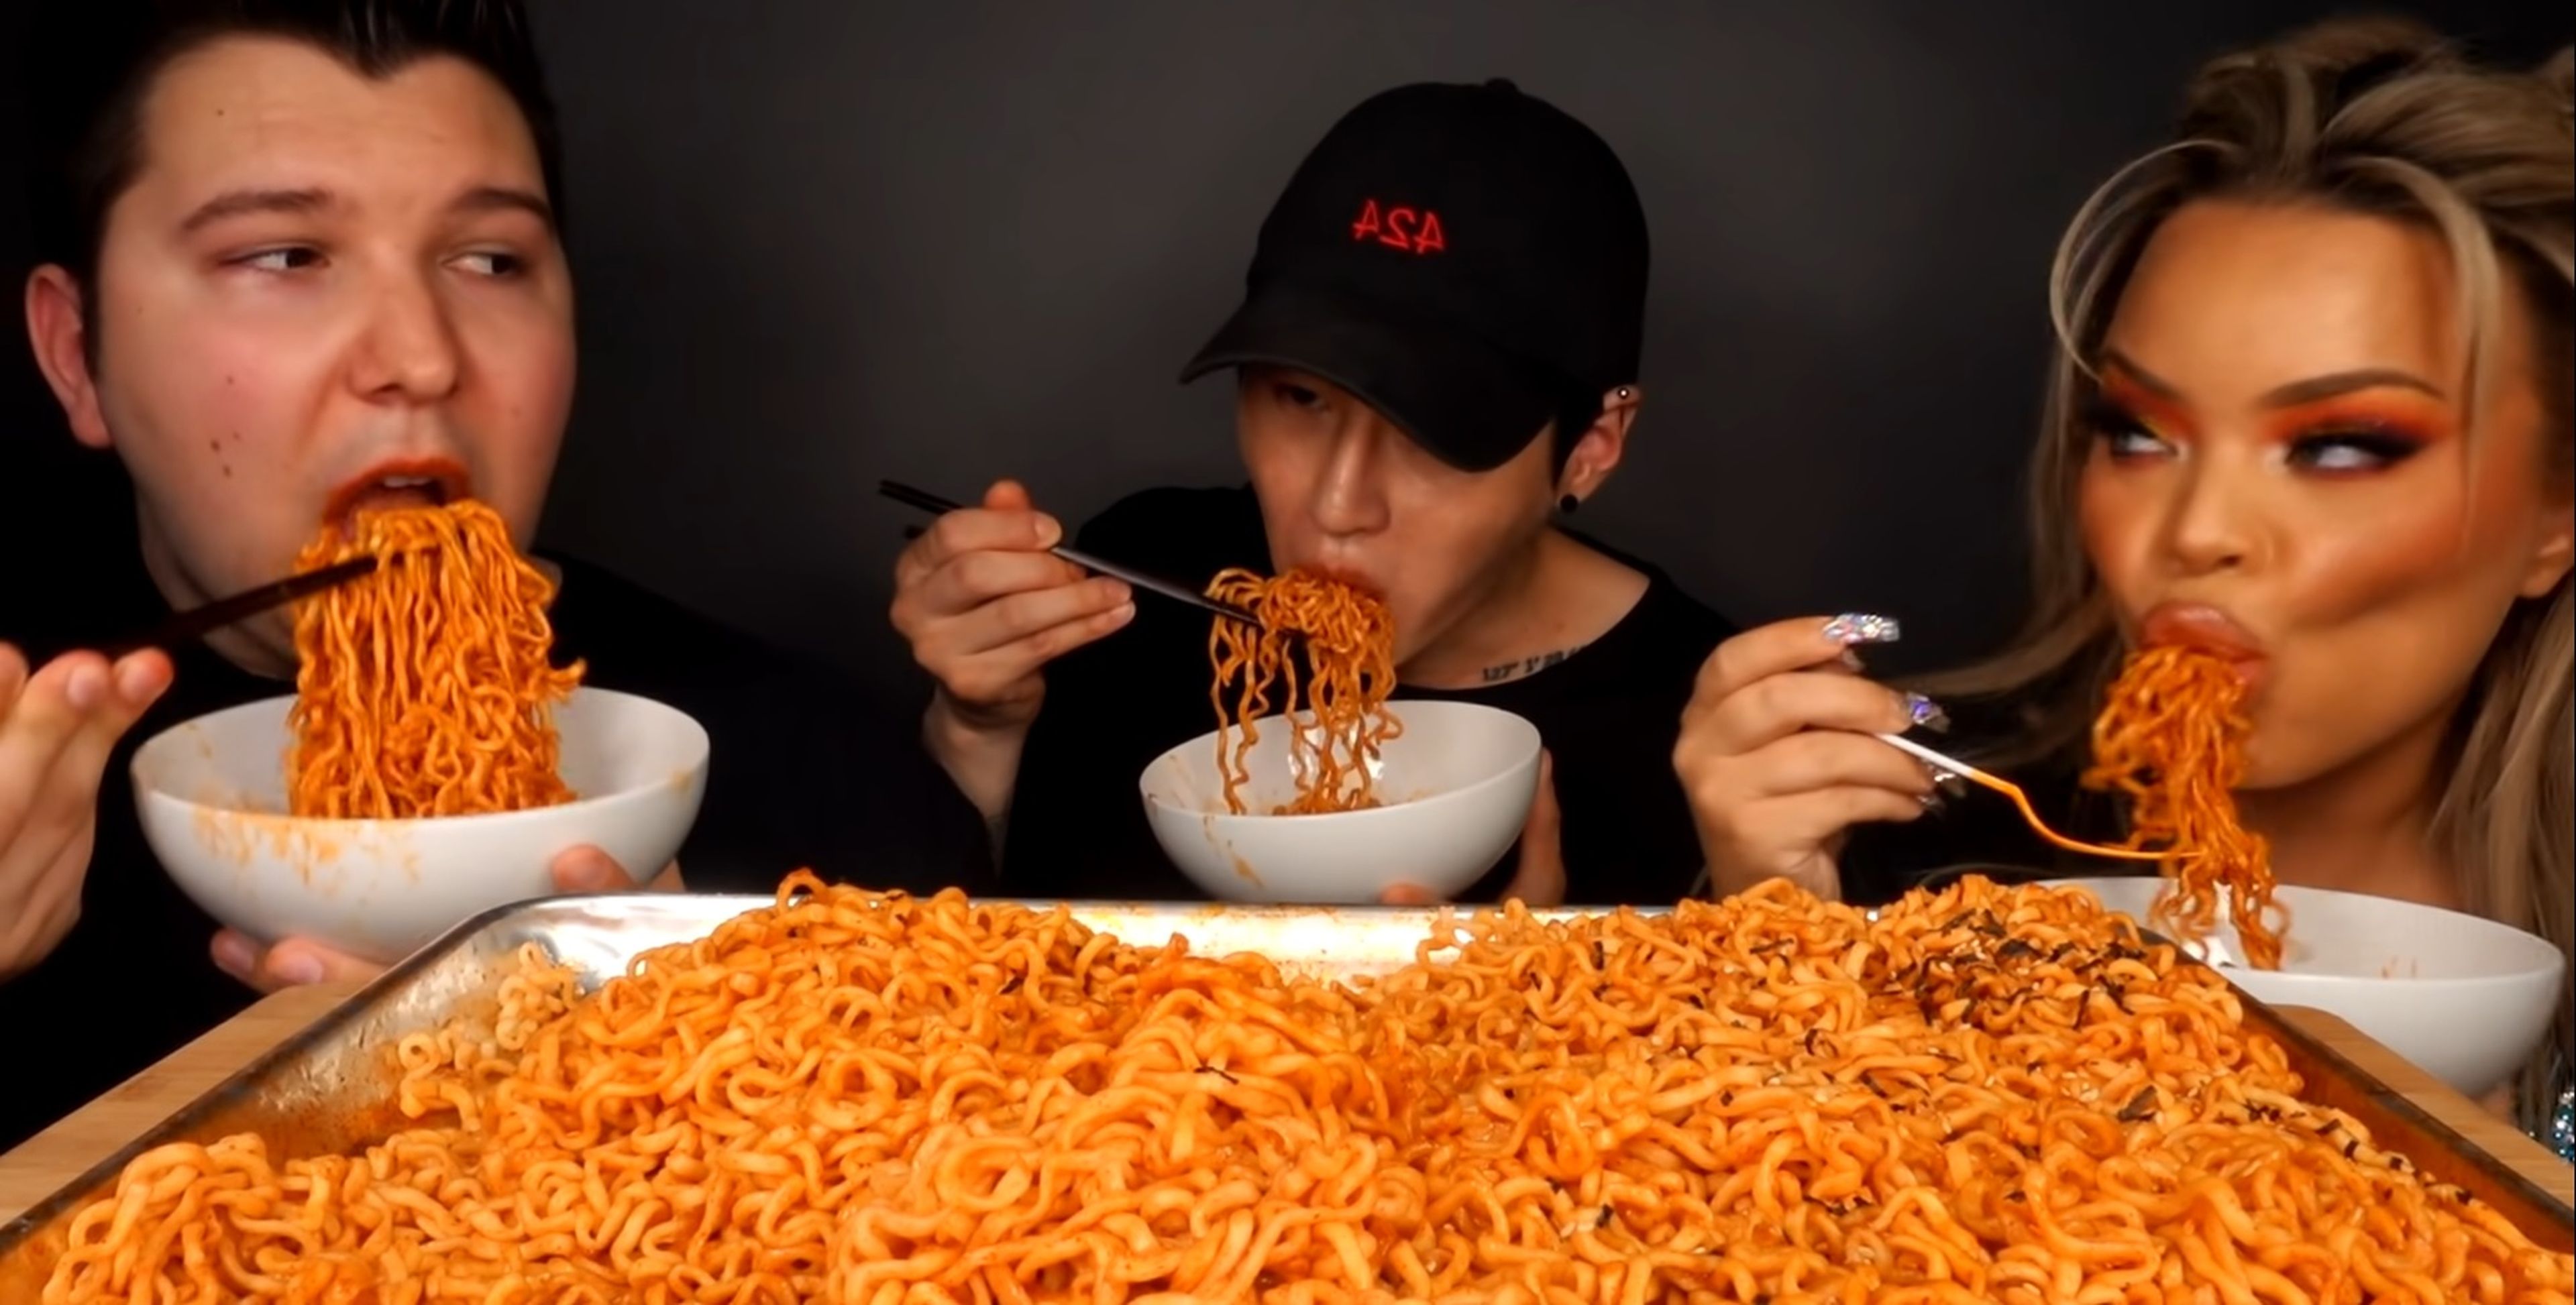 Grabarse mientras se come mucho se llama ‘Mukbang’ (YouTube - Zach Choi ASMR)